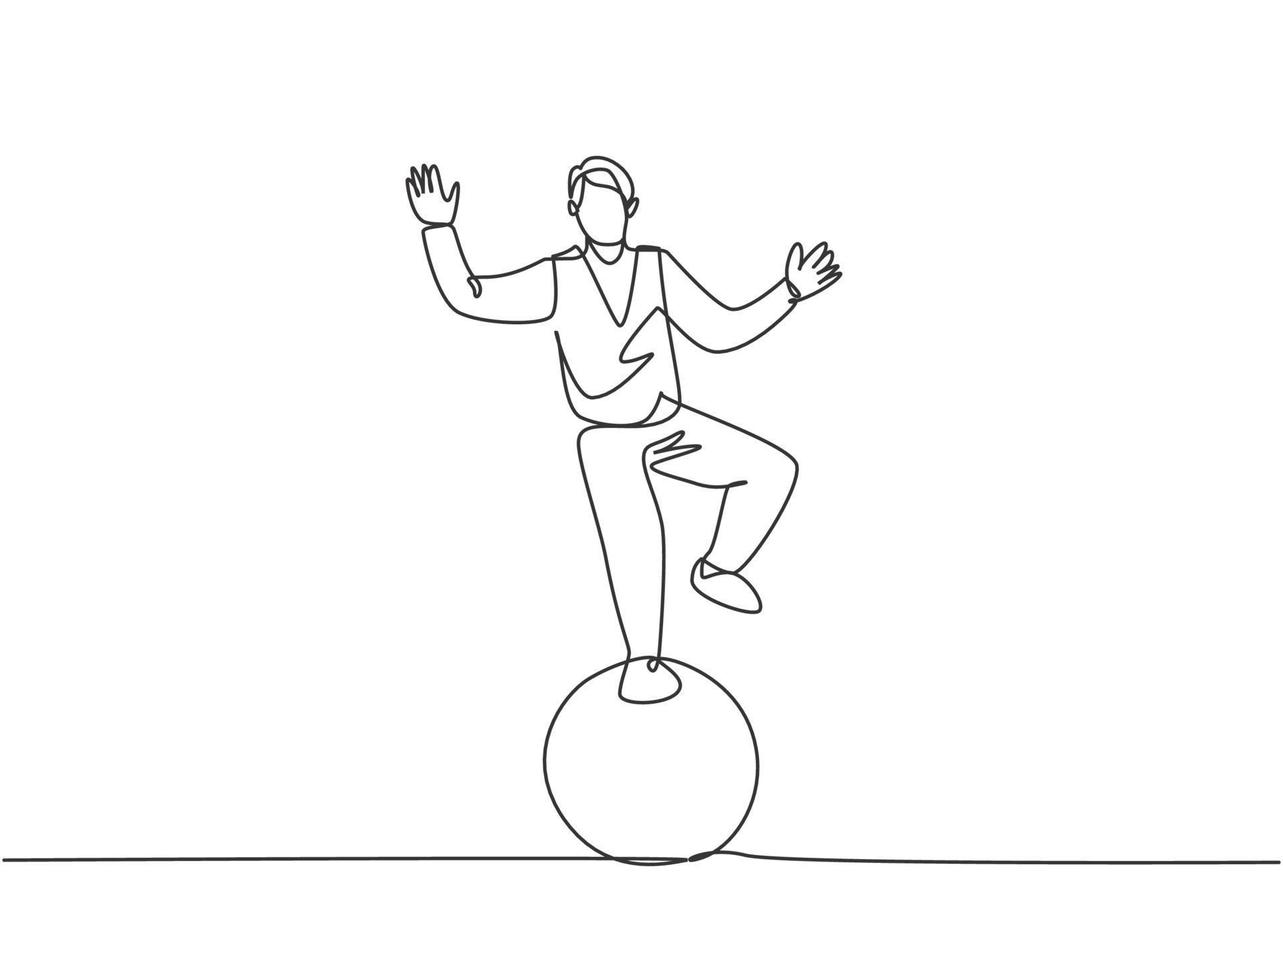 disegno continuo di una linea un acrobata maschio esegue un'acrobazia in piedi con un piede su una palla da circo mentre esegue una danza. interessante per il pubblico. illustrazione di vettore di disegno di tiraggio di linea singola.